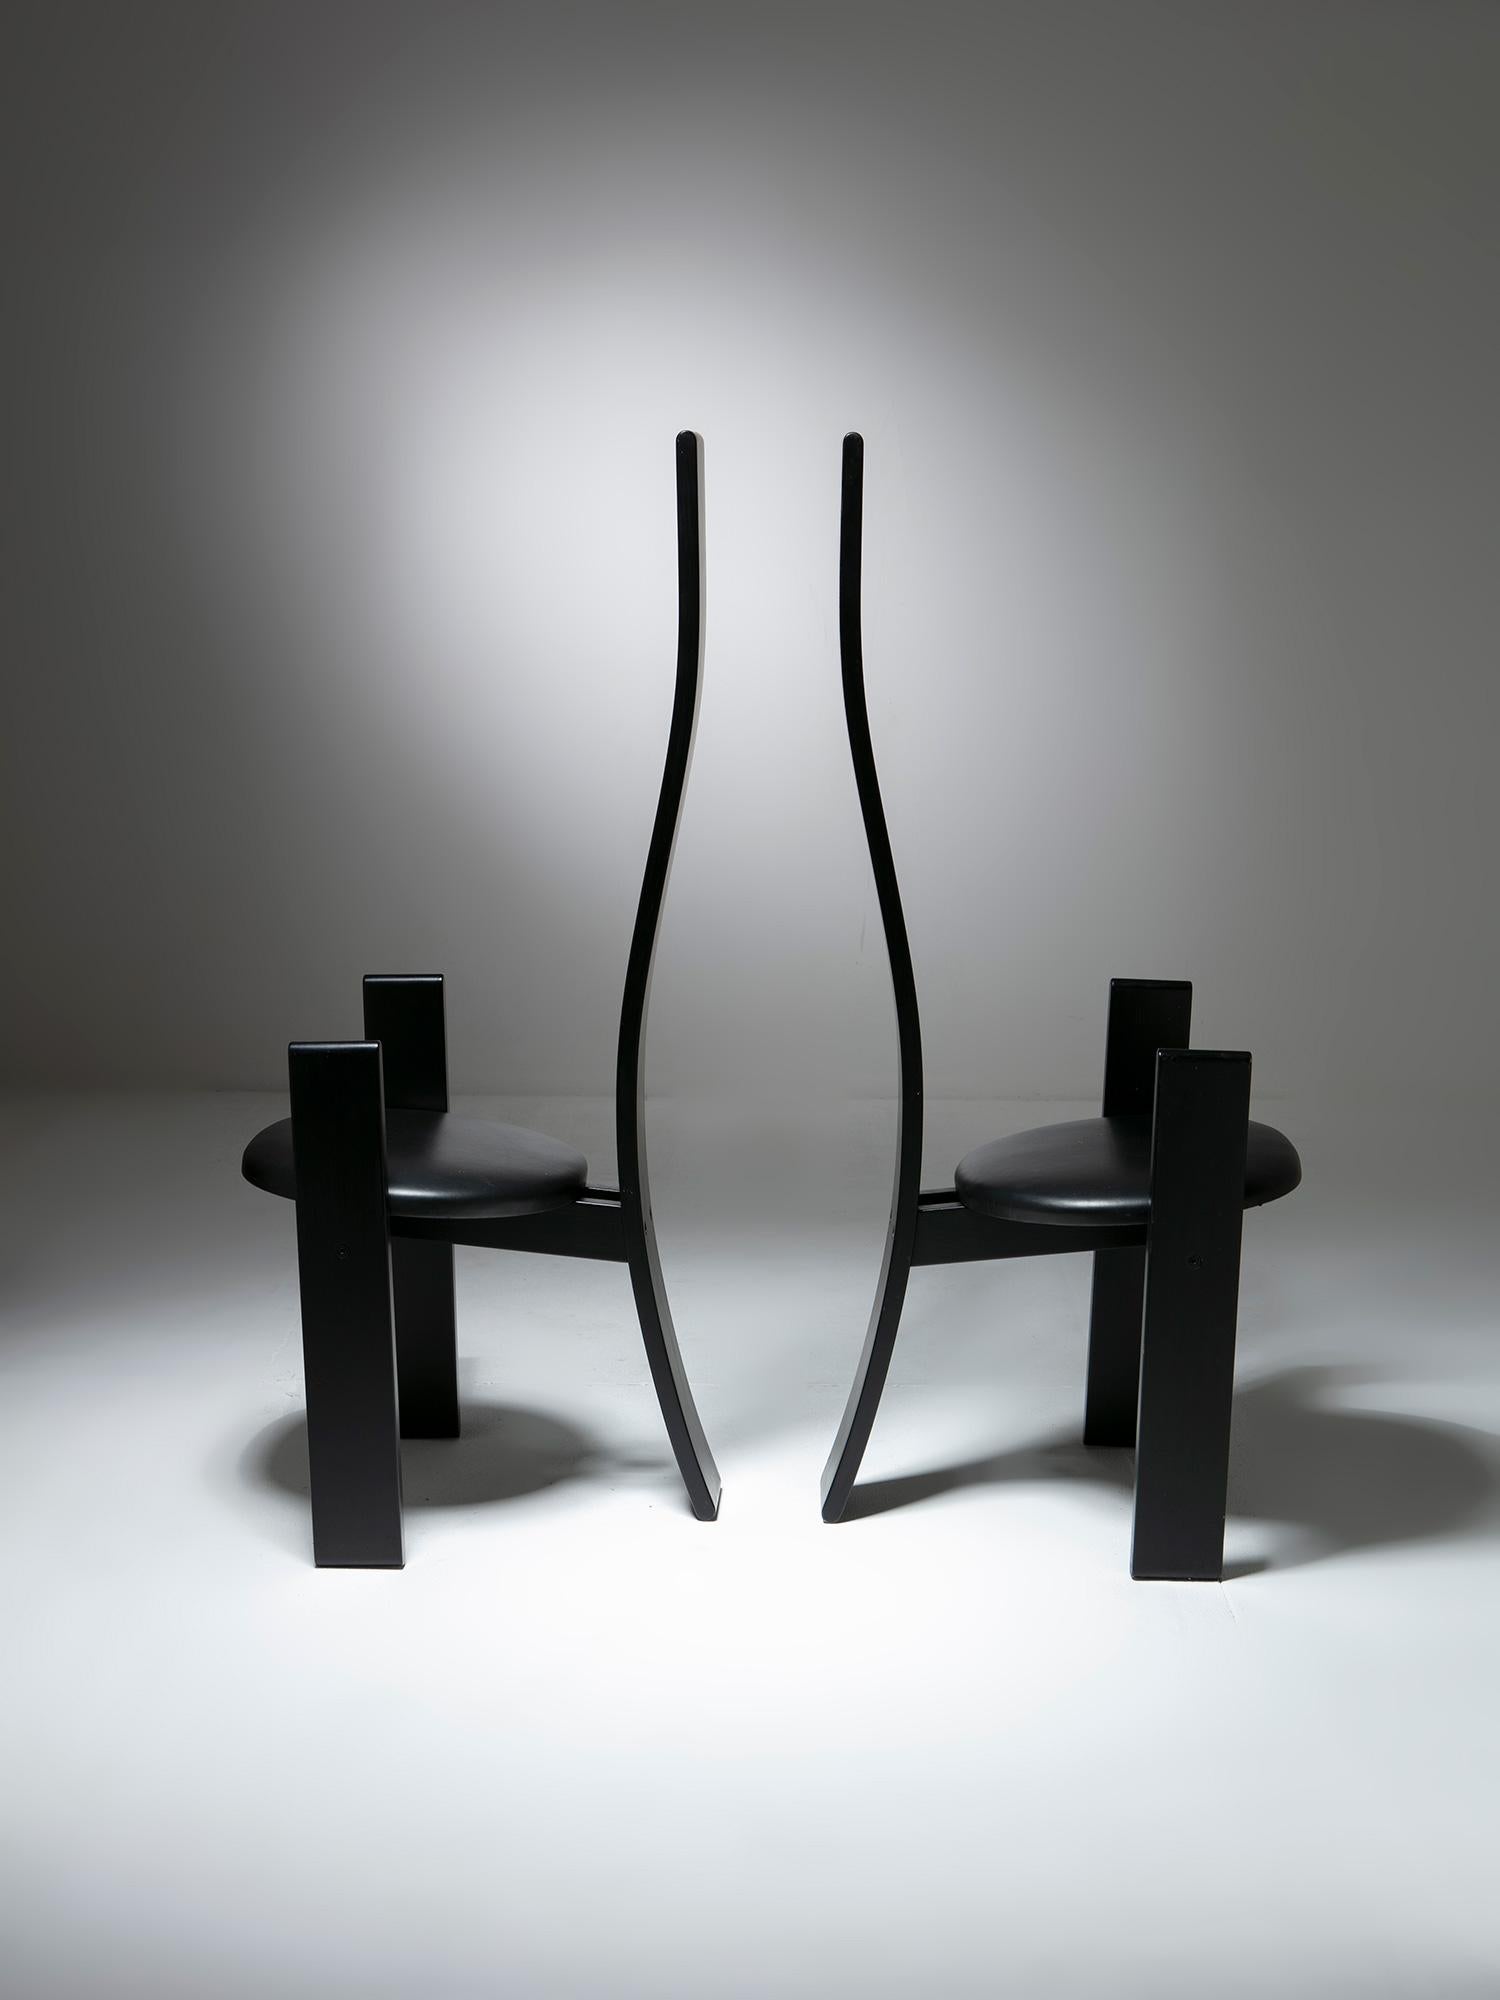 Ein Paar SD51 Golem-Stühle von Vico Magistretti für Poggi.
Geschwungene lange Rückenlehne, lackierter Rahmen und Lederbezug.
Ein drittes Einzelstück verfügbar